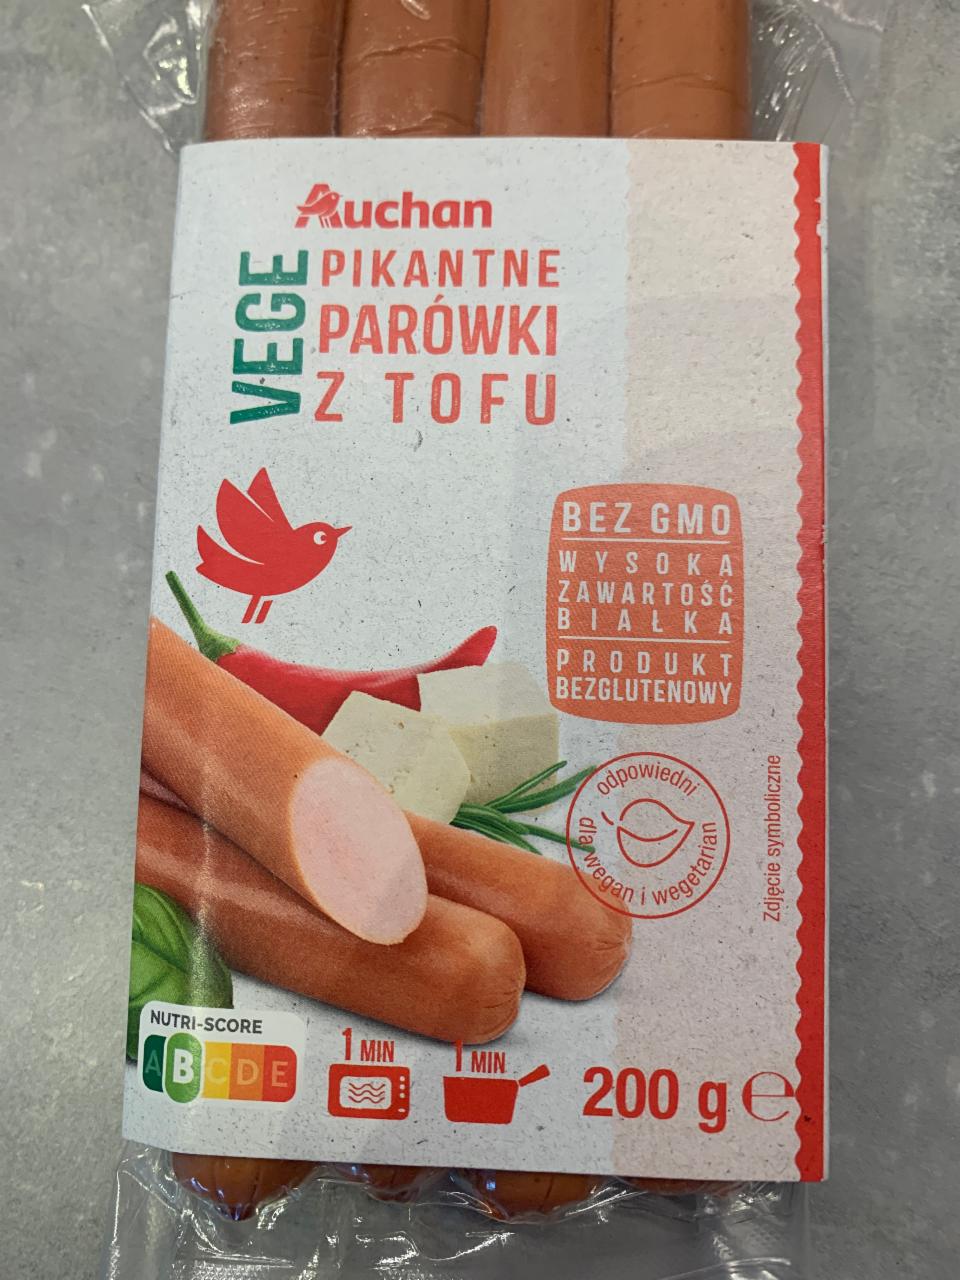 Фото - Vege parówki z tofu pikantne Auchan